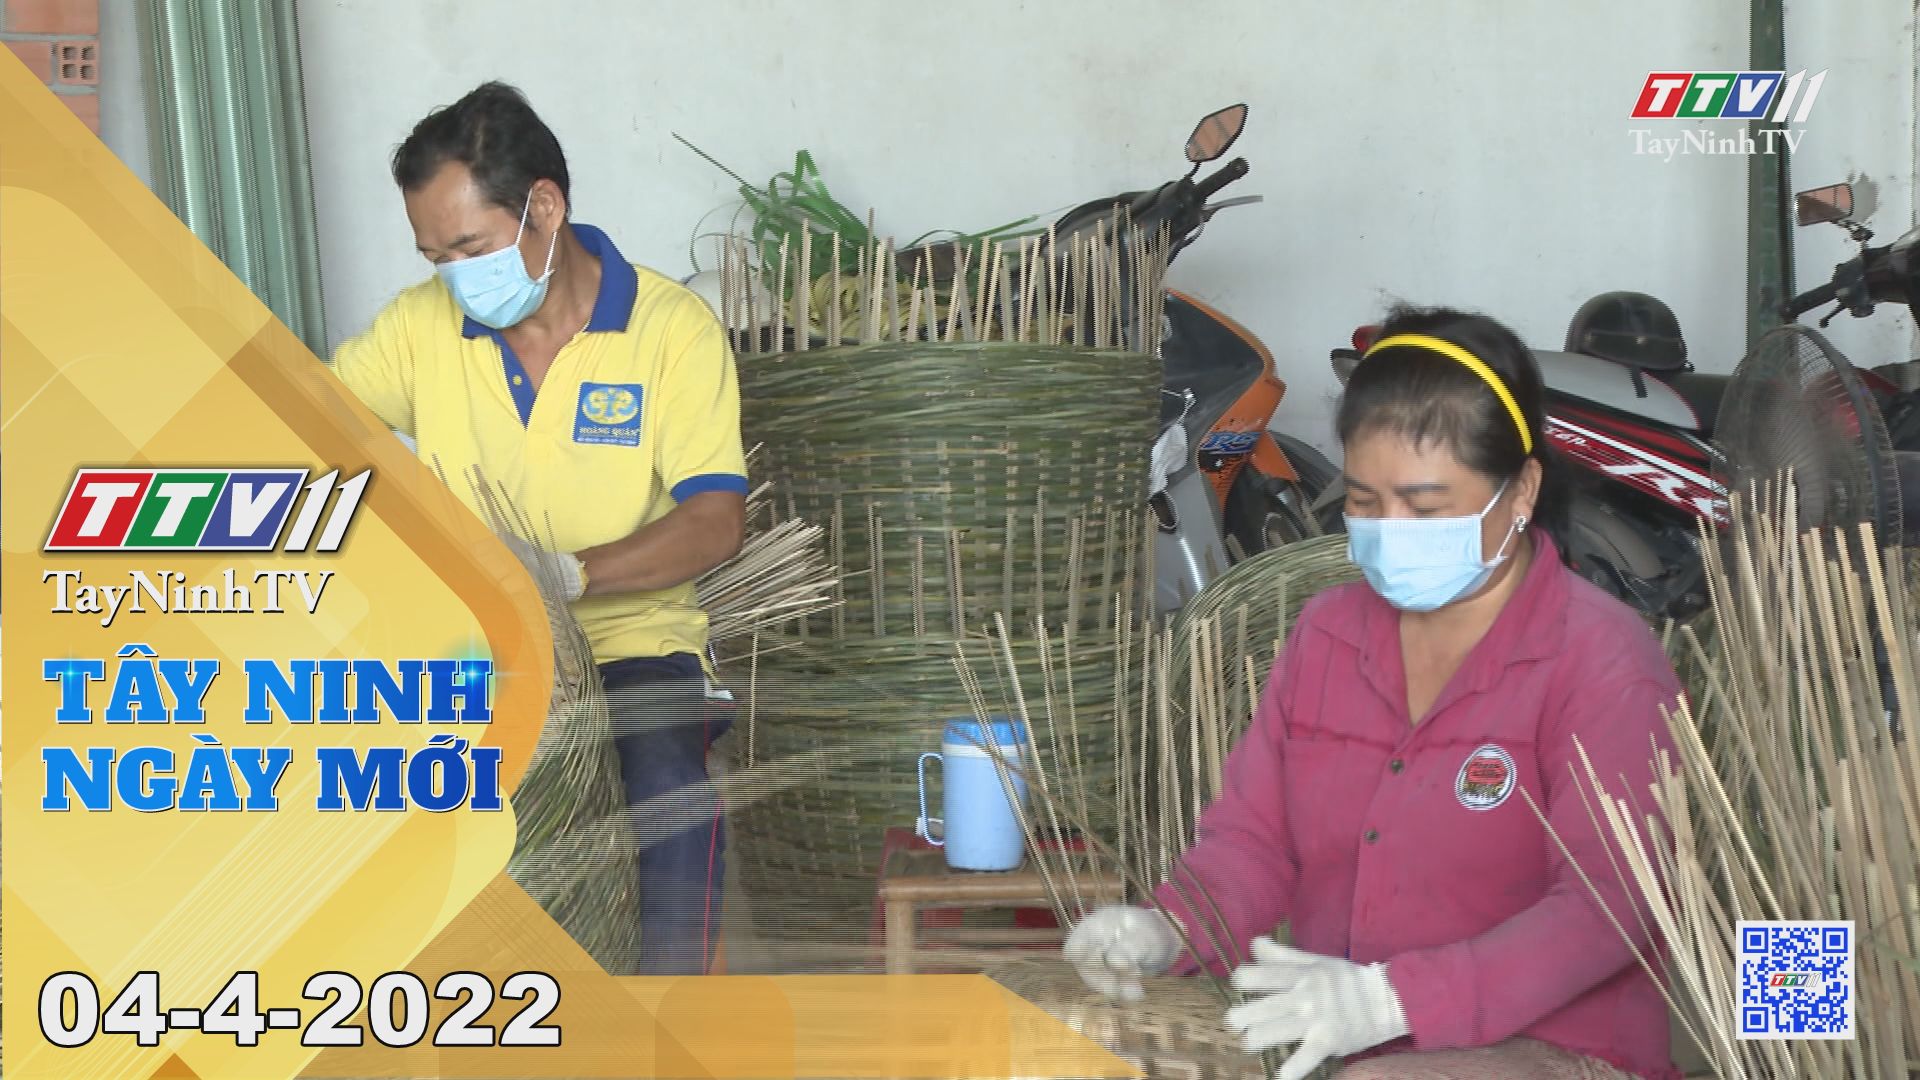 Tây Ninh ngày mới 04-4-2022 | Tin tức hôm nay | TayNinhTV